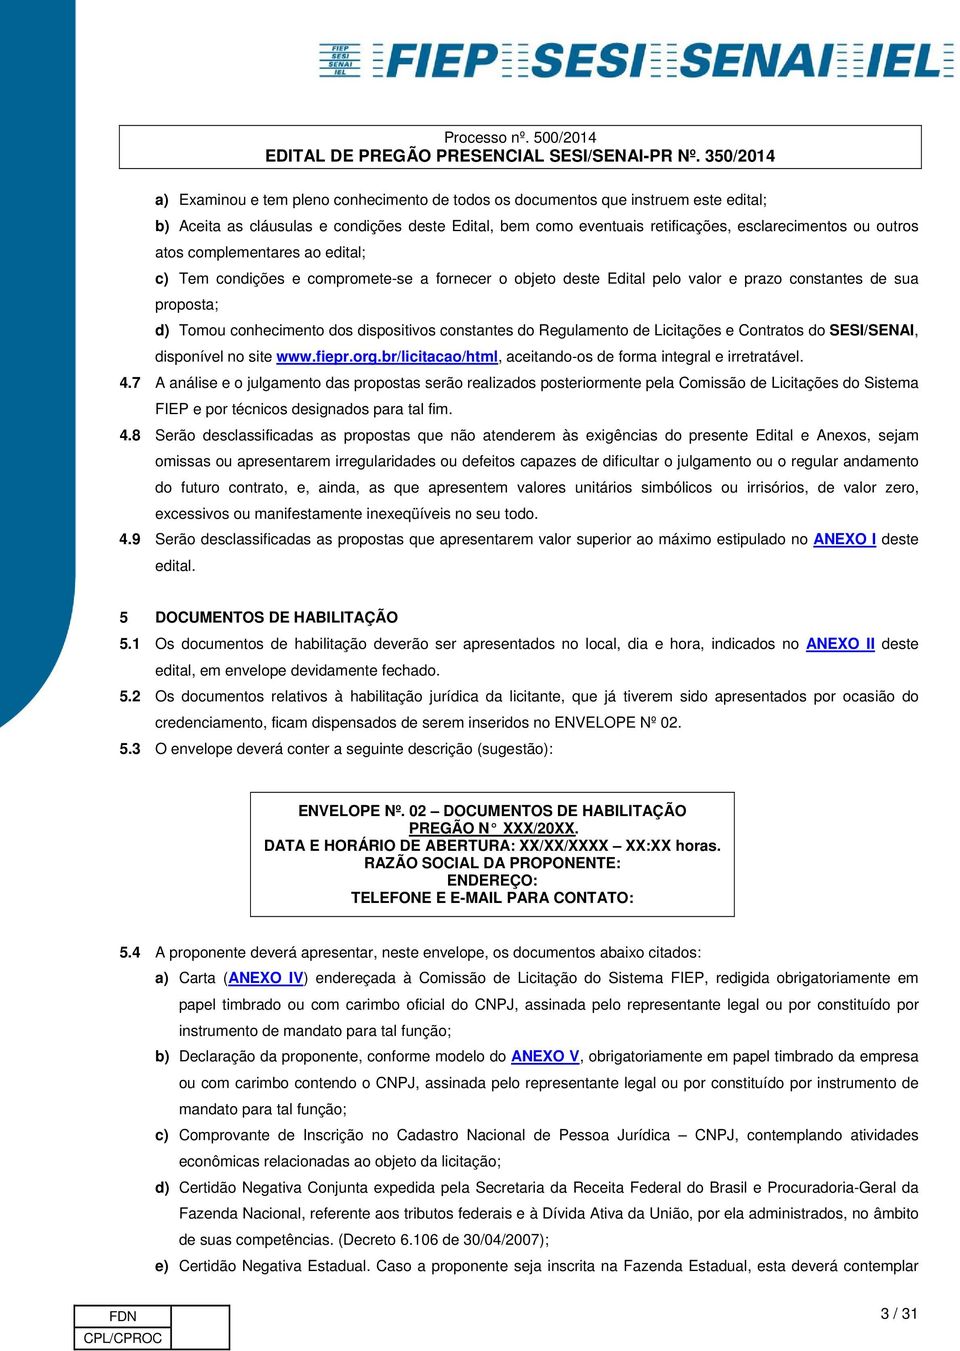 Regulamento de Licitações e Contratos do SESI/SENAI, disponível no site www.fiepr.org.br/licitacao/html, aceitando-os de forma integral e irretratável. 4.